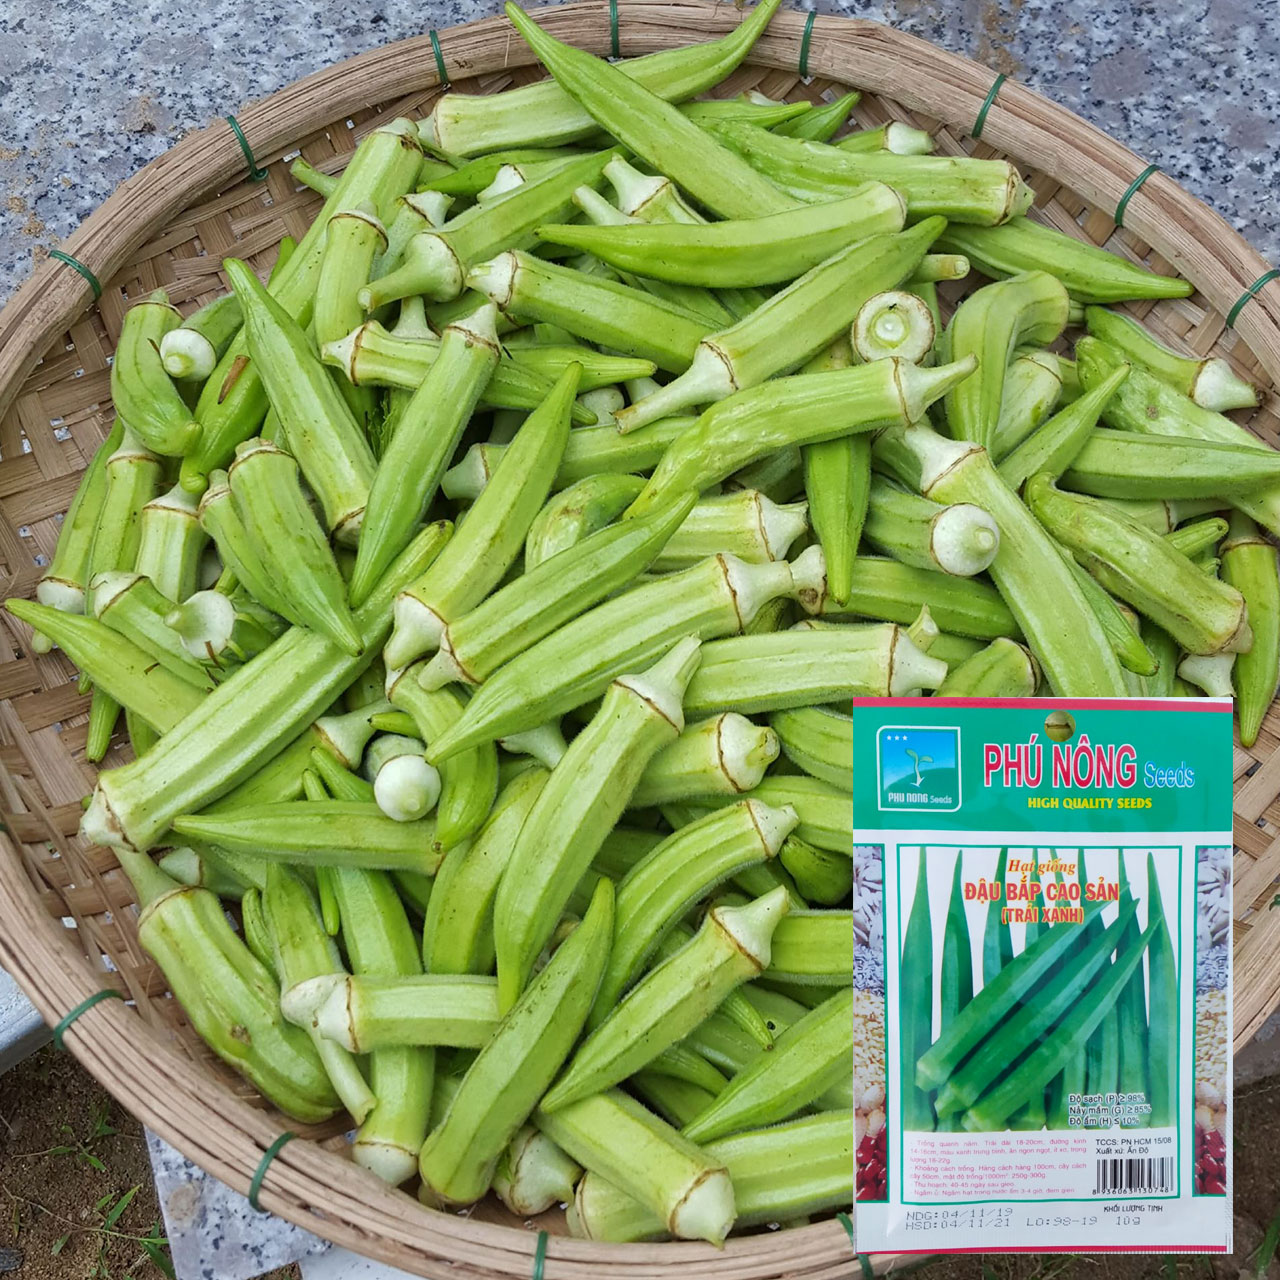 Hạt Giống Đậu Bắp Cao Sản Phú Nông Gói 10 Gram